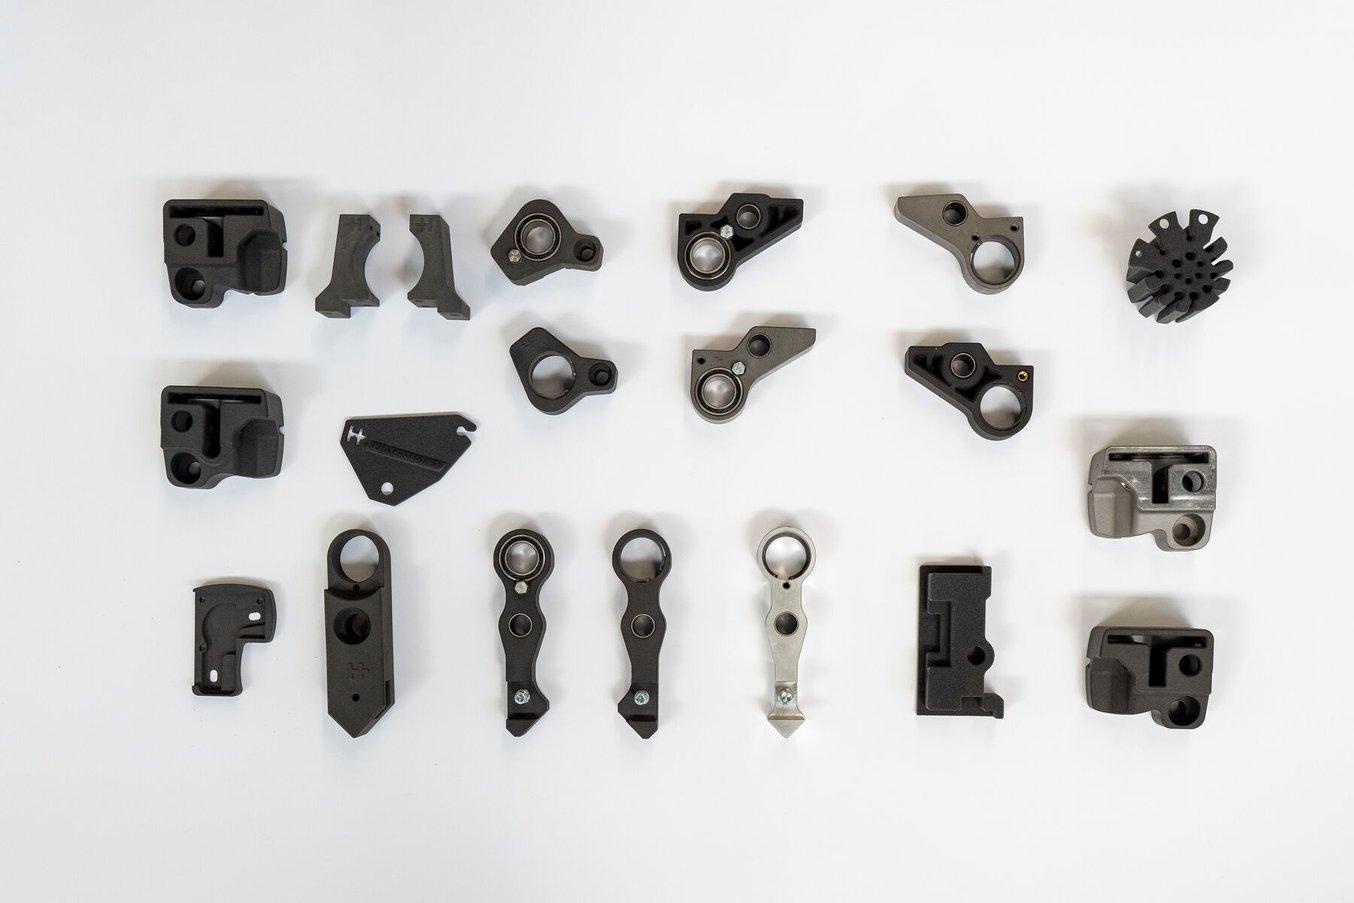 HEIDELBERG utiliza piezas impresas en 3D se utilizan para una amplia gama de aplicaciones, que incluyen piezas ligeras para robots y piezas de recambio para componentes de máquinas que antes se fabricaban con acero.